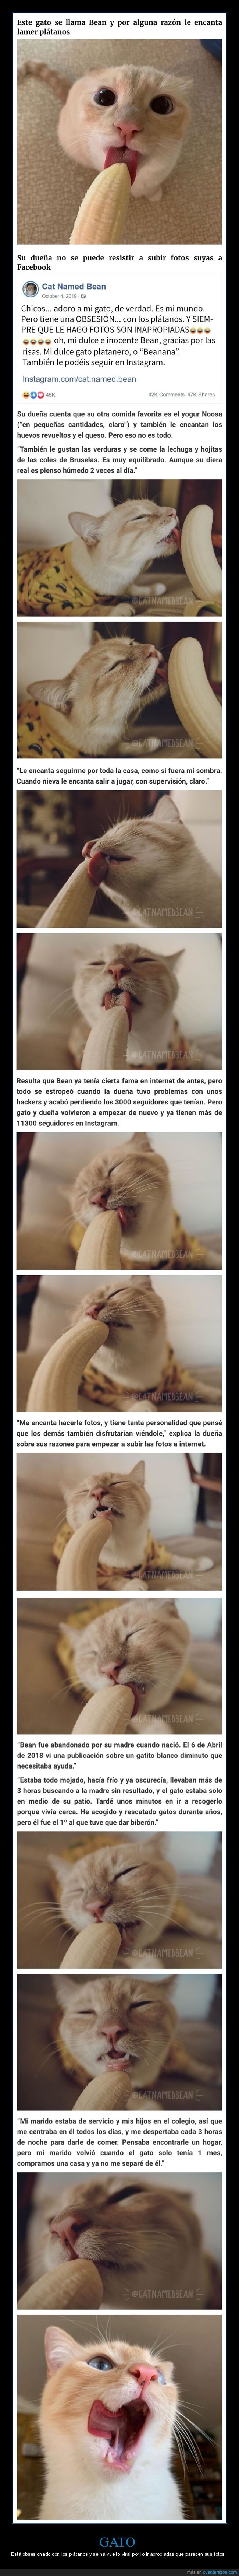 gato,plátanos,inapropiado